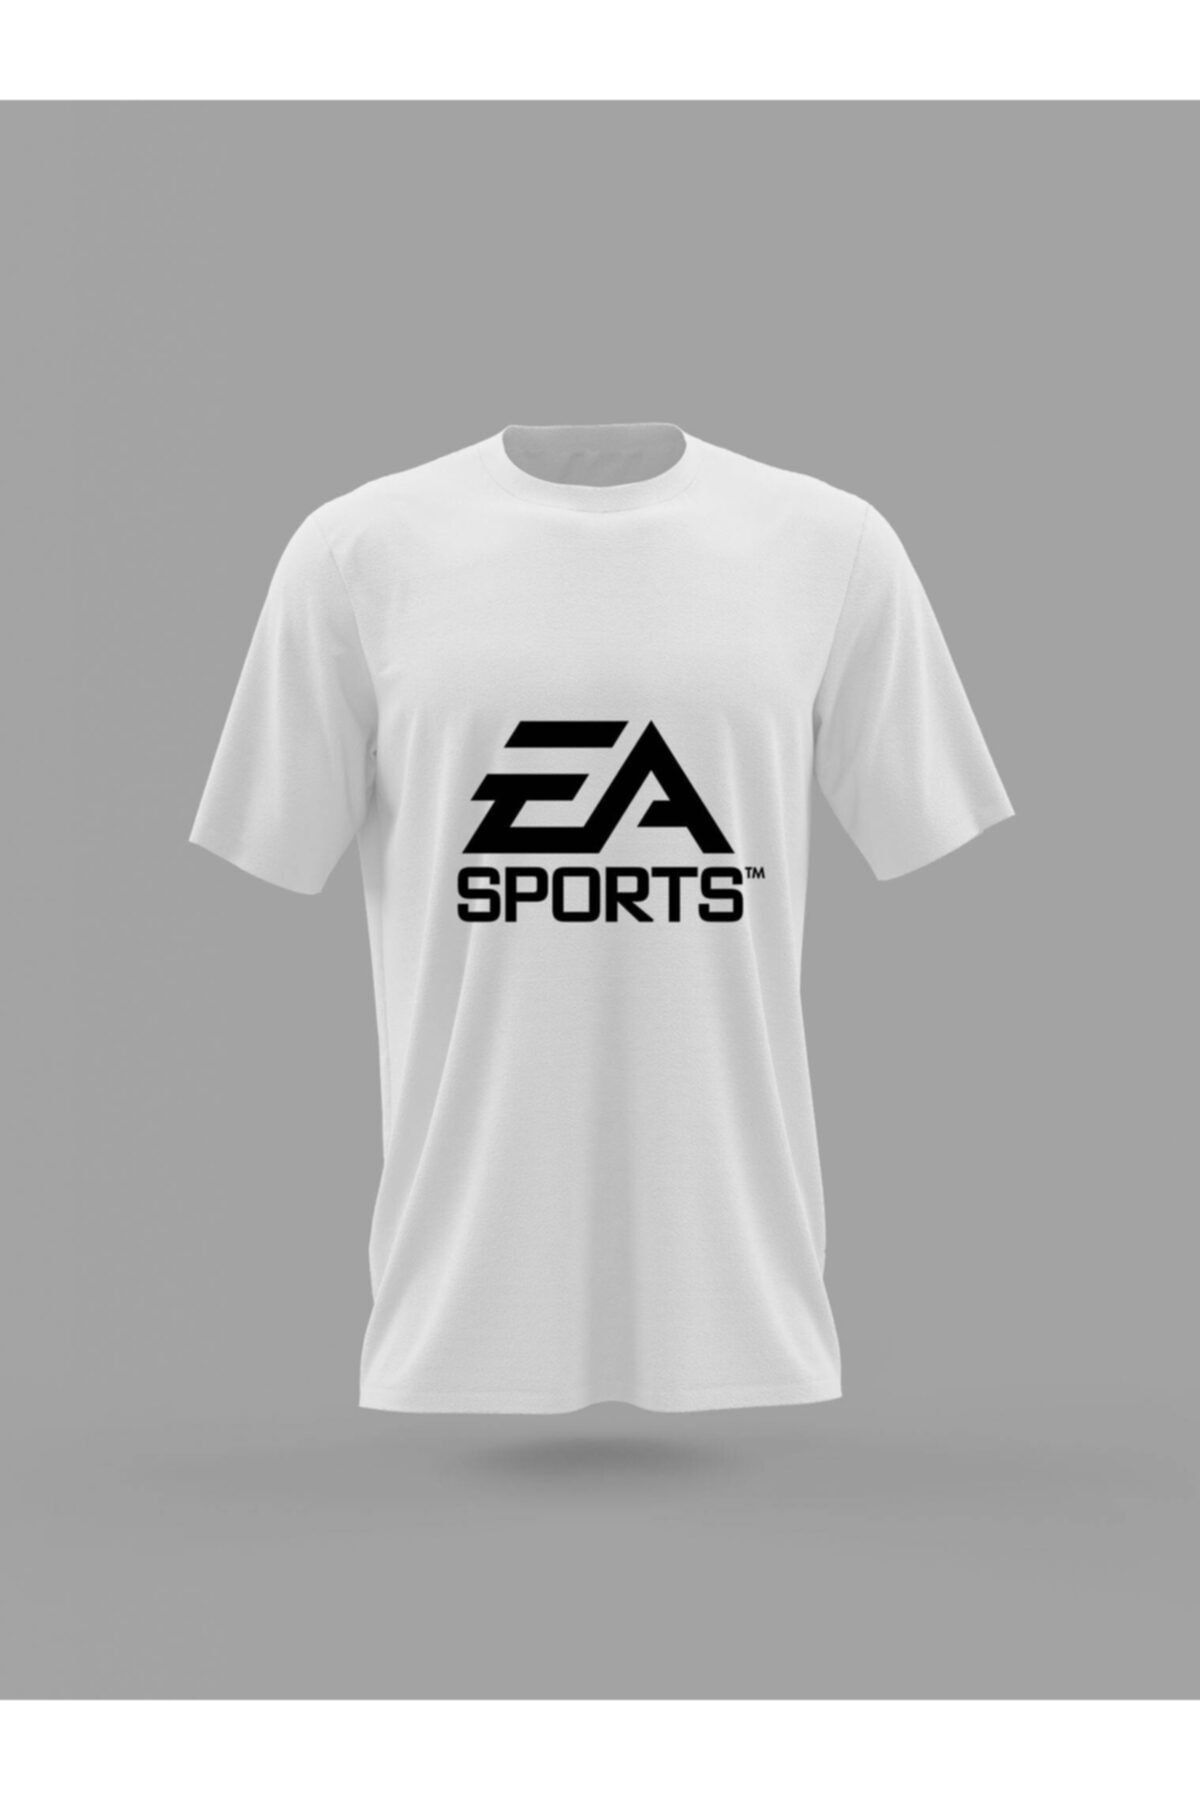 Panorama Ajans Ea Sports Oyun Yapım Şirket Baskılı T-shirt